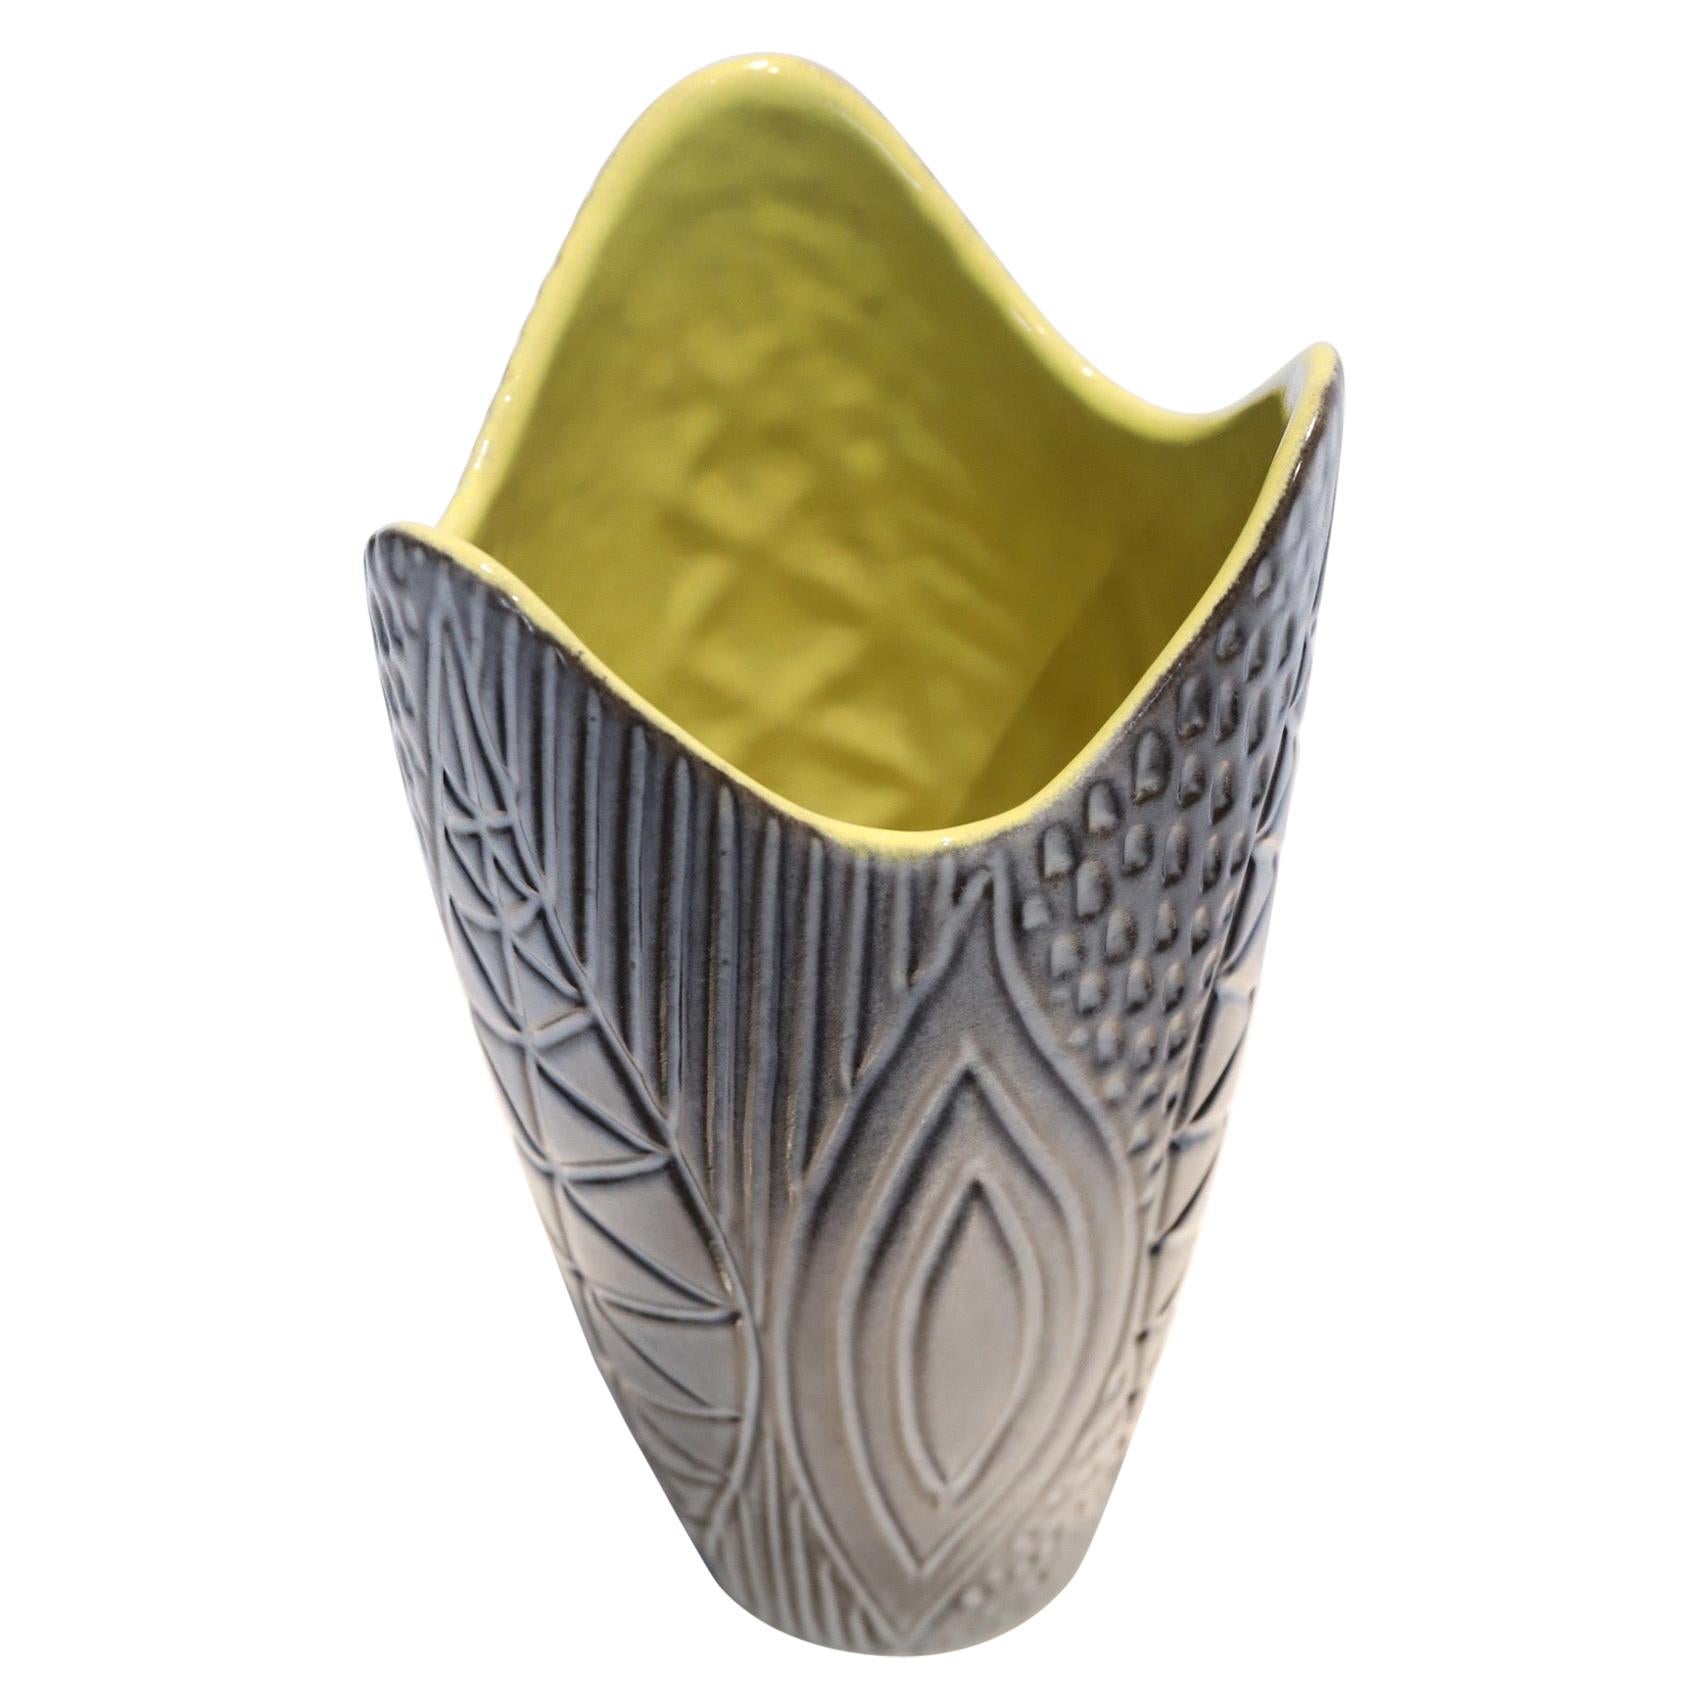 Keramikvase von Mari Simmulson für Upsala-Ekeby